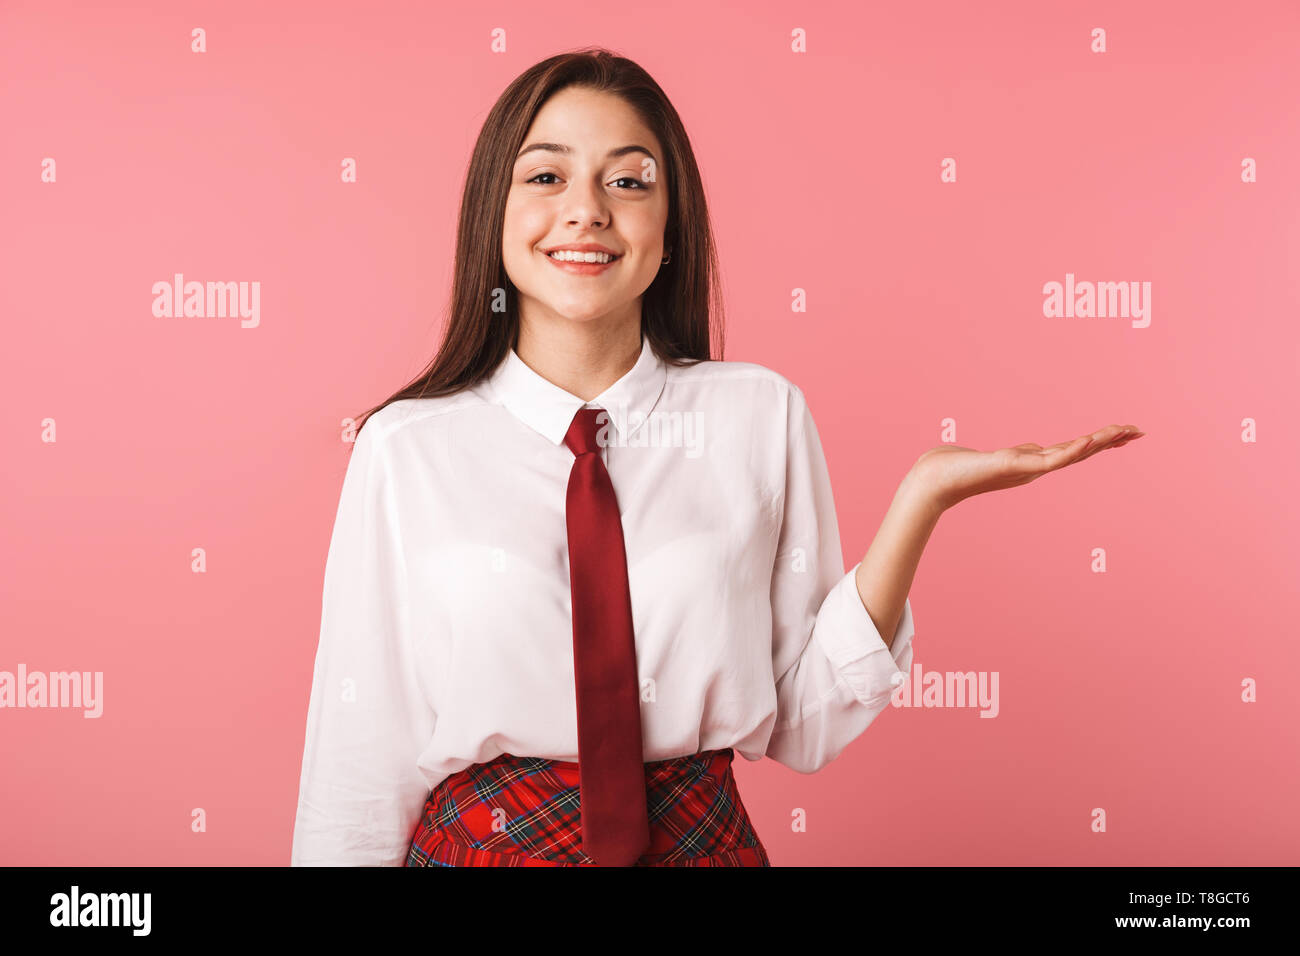 Immagine della ragazza felice 15-16y in uniforme scolastica in piedi isolato su sfondo rosso Foto Stock